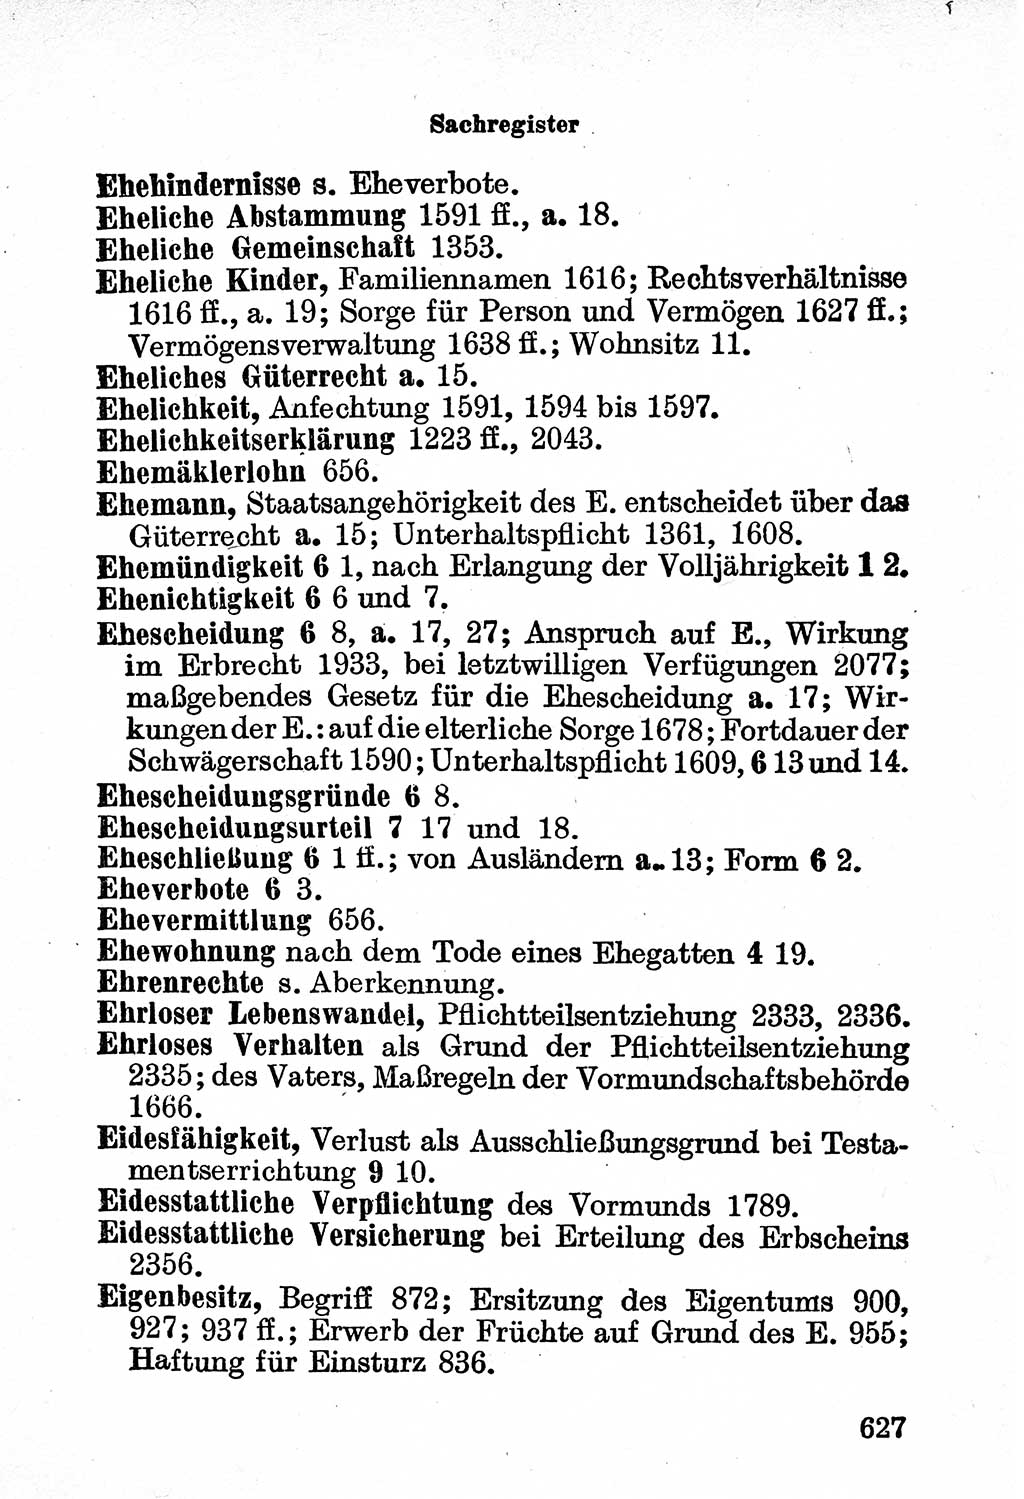 Bürgerliches Gesetzbuch (BGB) nebst wichtigen Nebengesetzen [Deutsche Demokratische Republik (DDR)] 1956, Seite 627 (BGB Nebenges. DDR 1956, S. 627)